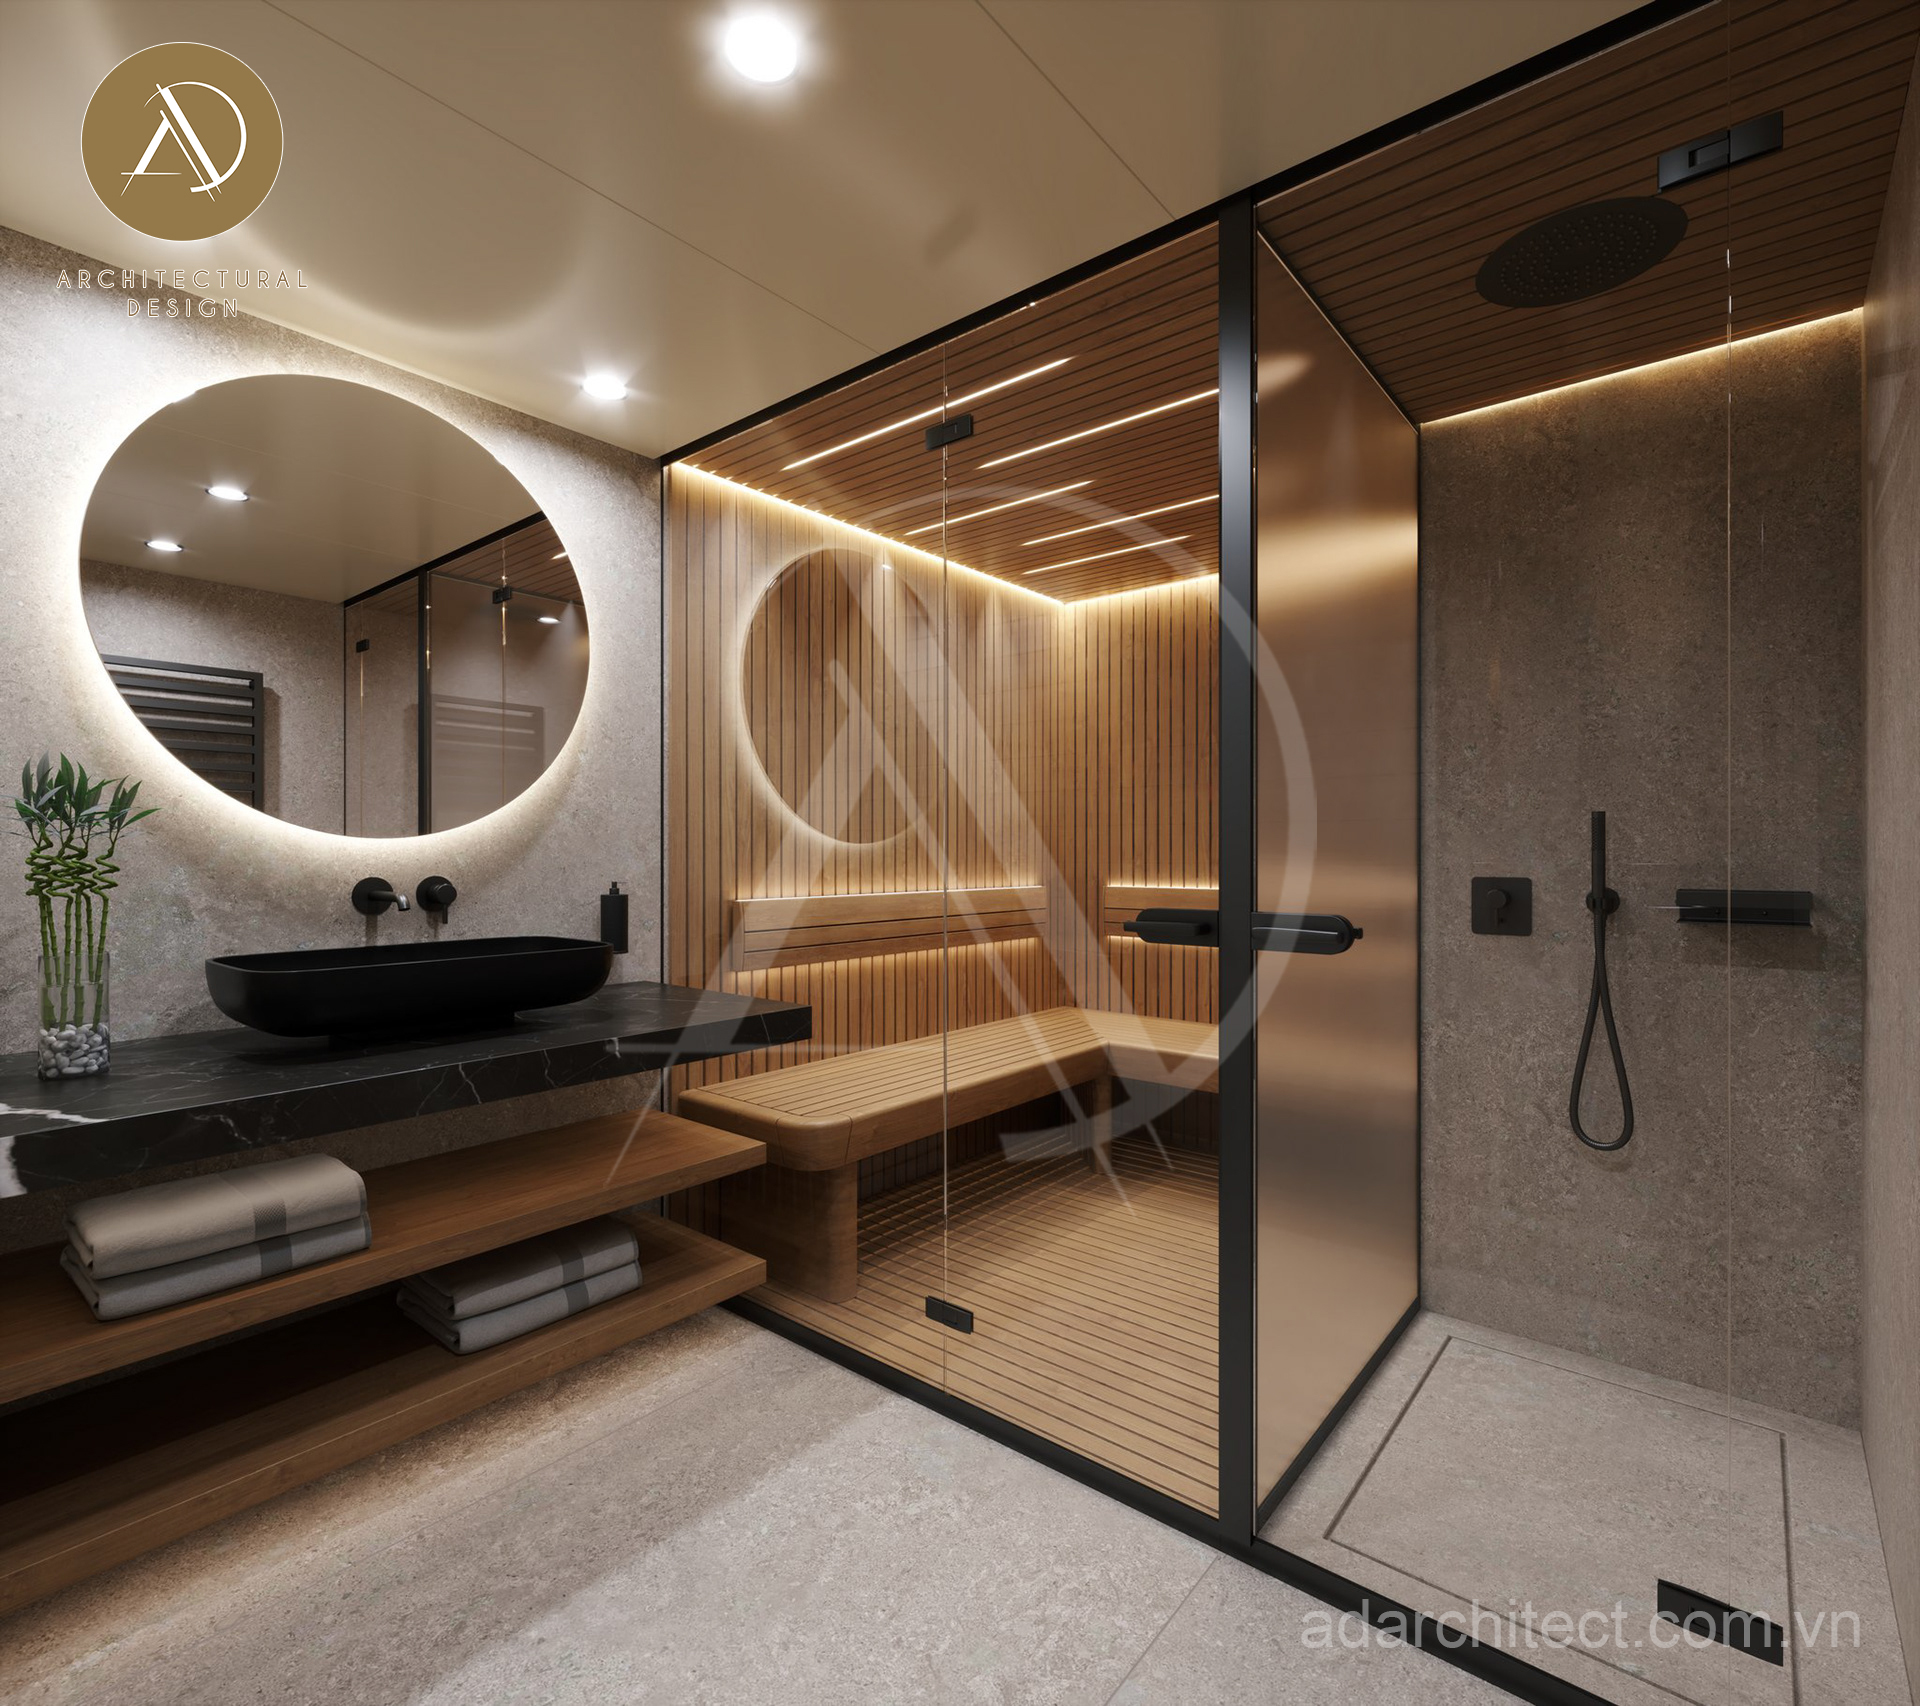 Phòng tắm với thiết kế hiện đại và tiện nghi